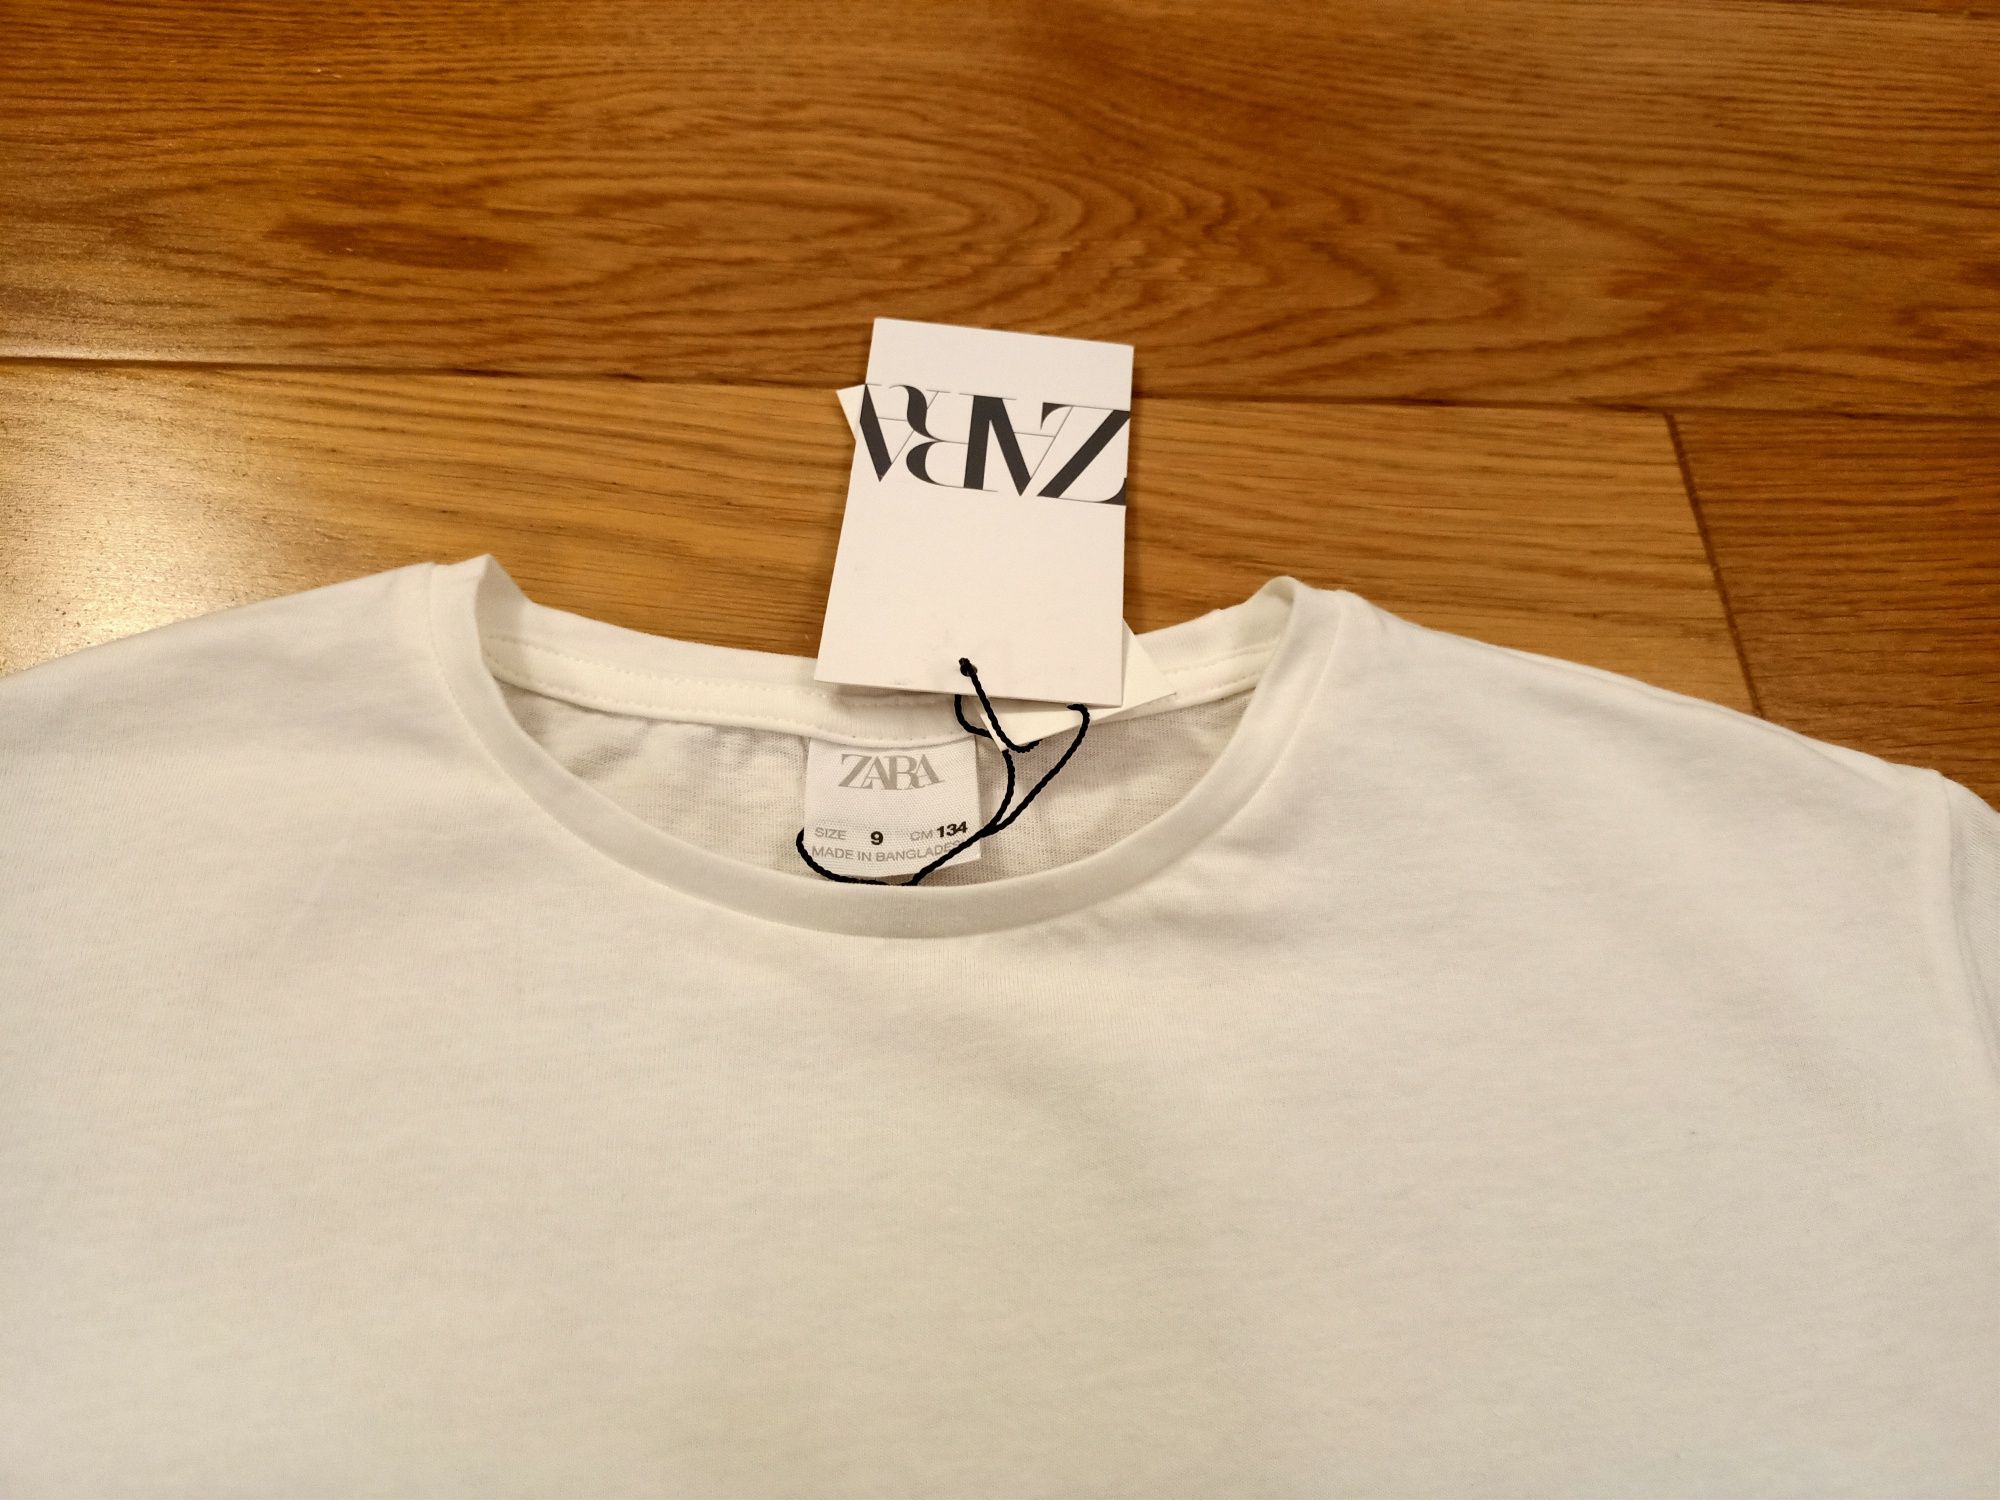 Nowa bluzka Zara r 134 ekri koronka śliczna polecam!